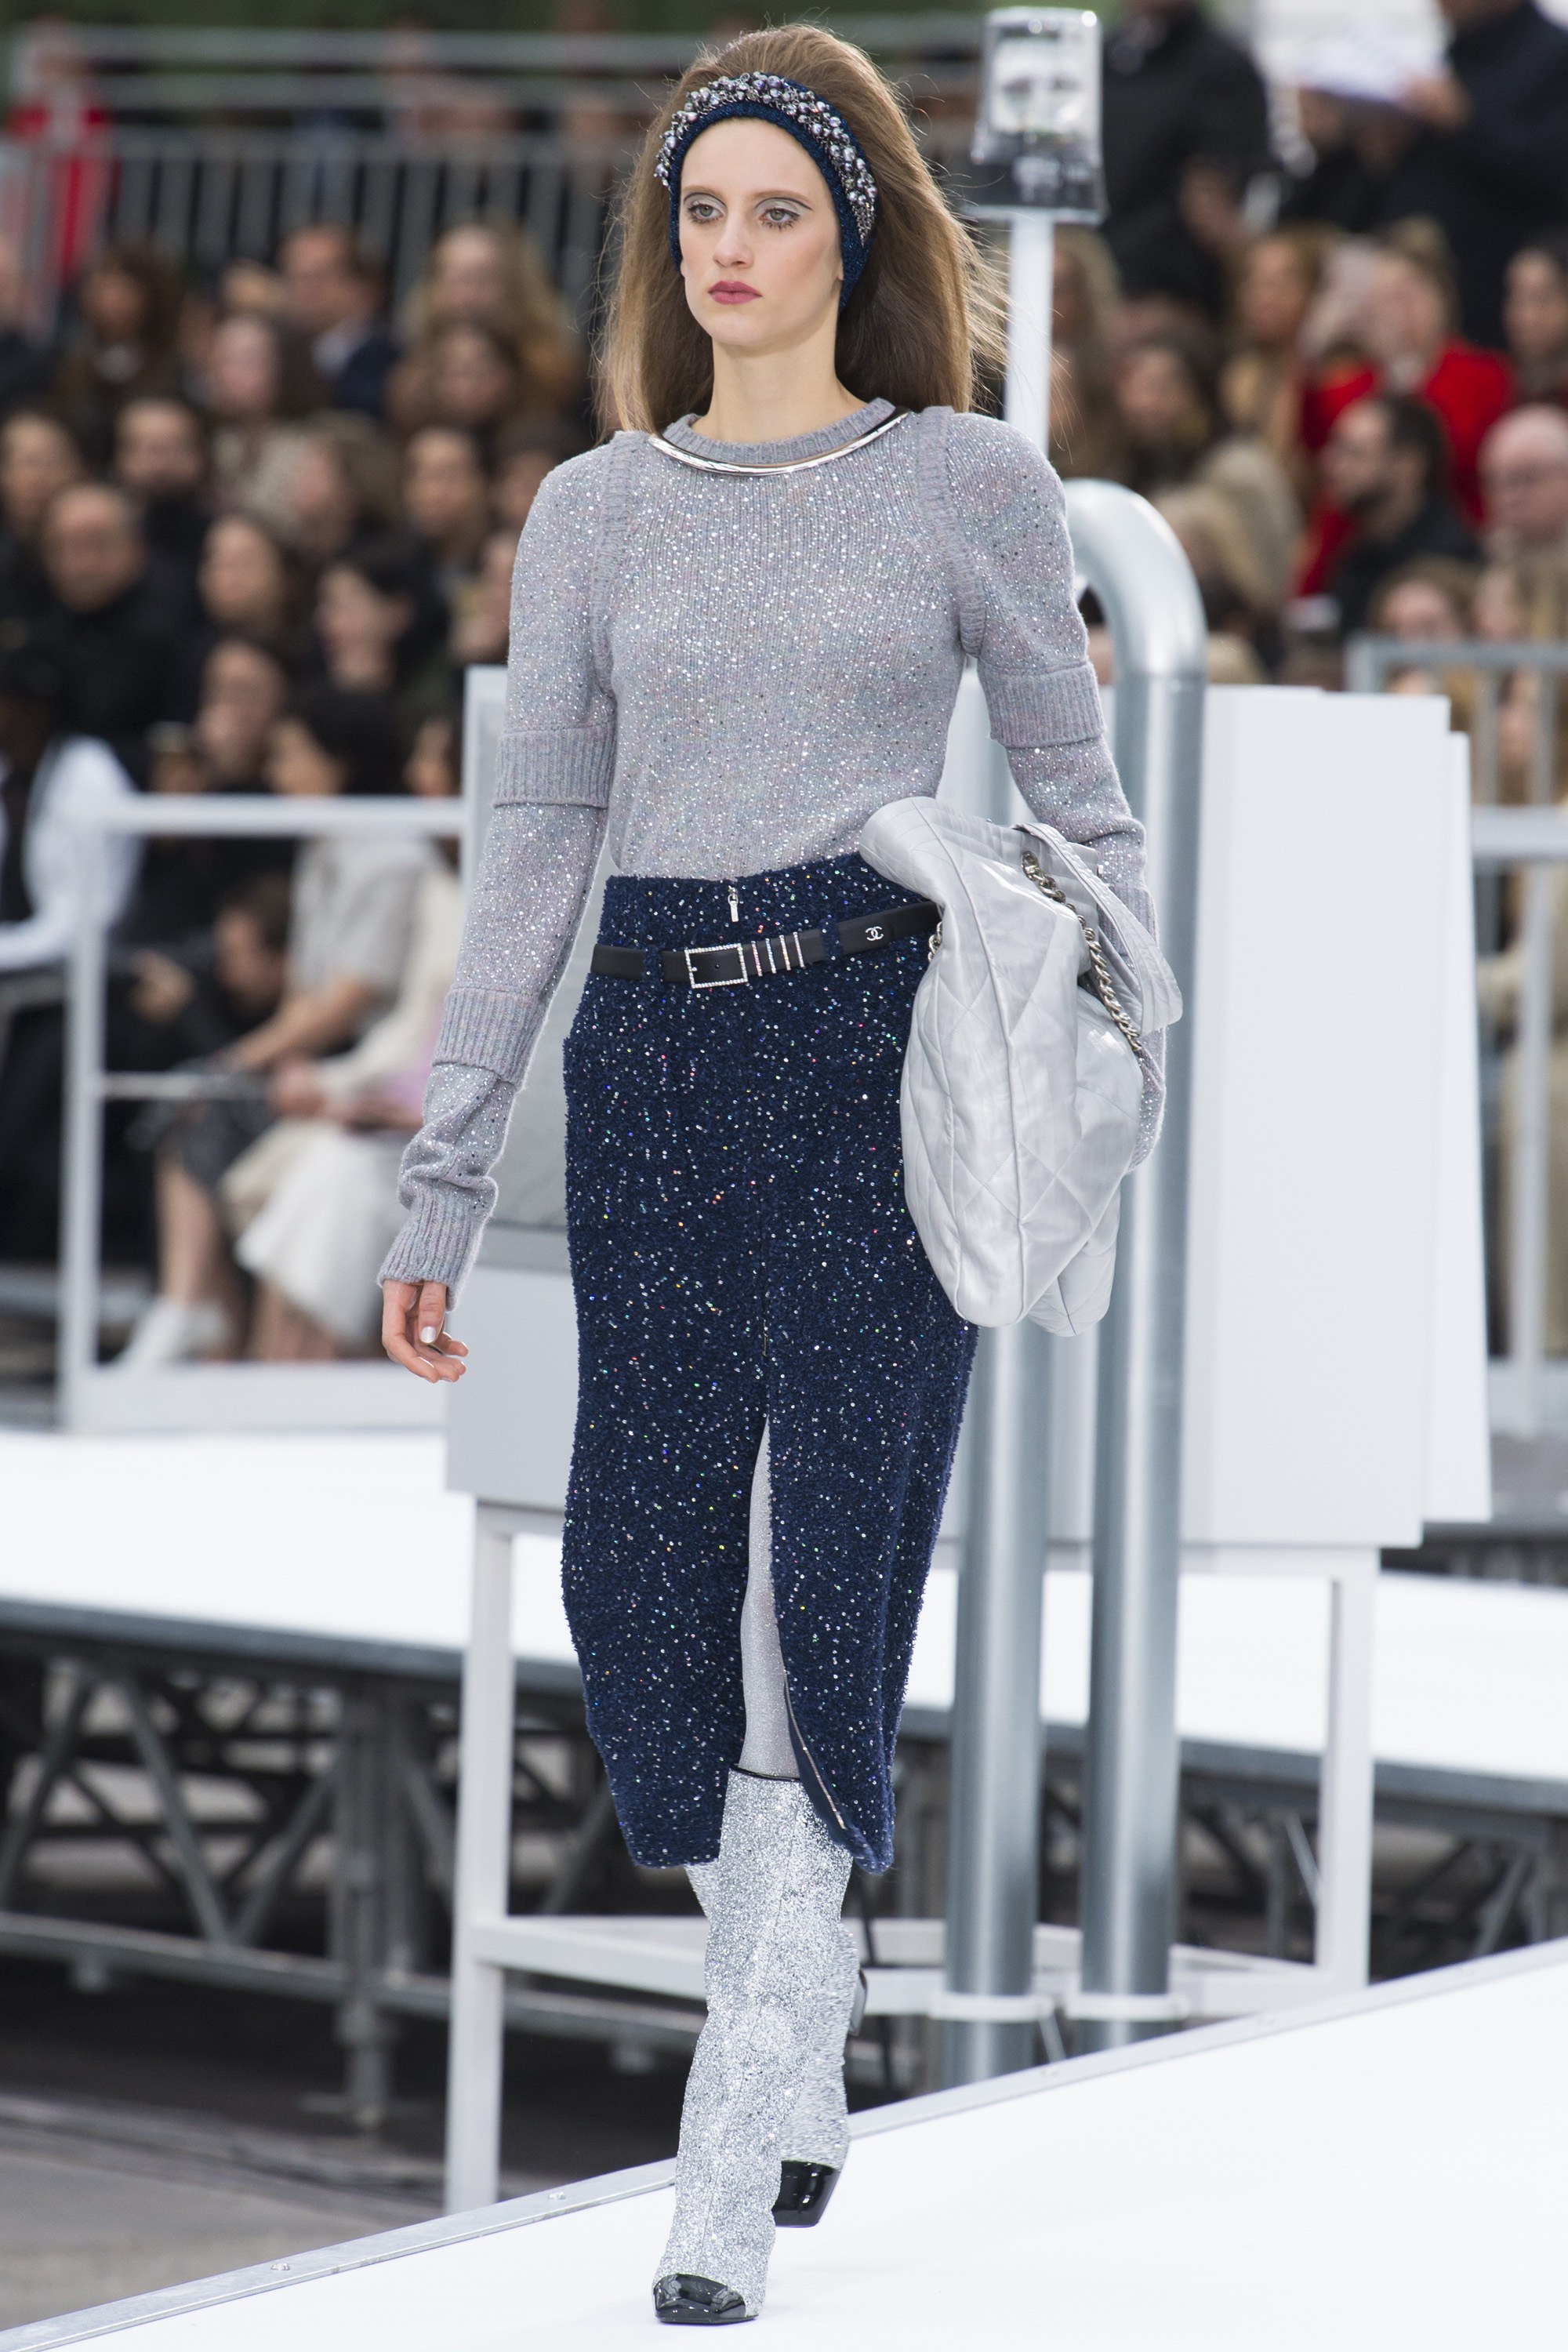 Chanel's Paris Fashion Week rocket launch runway show